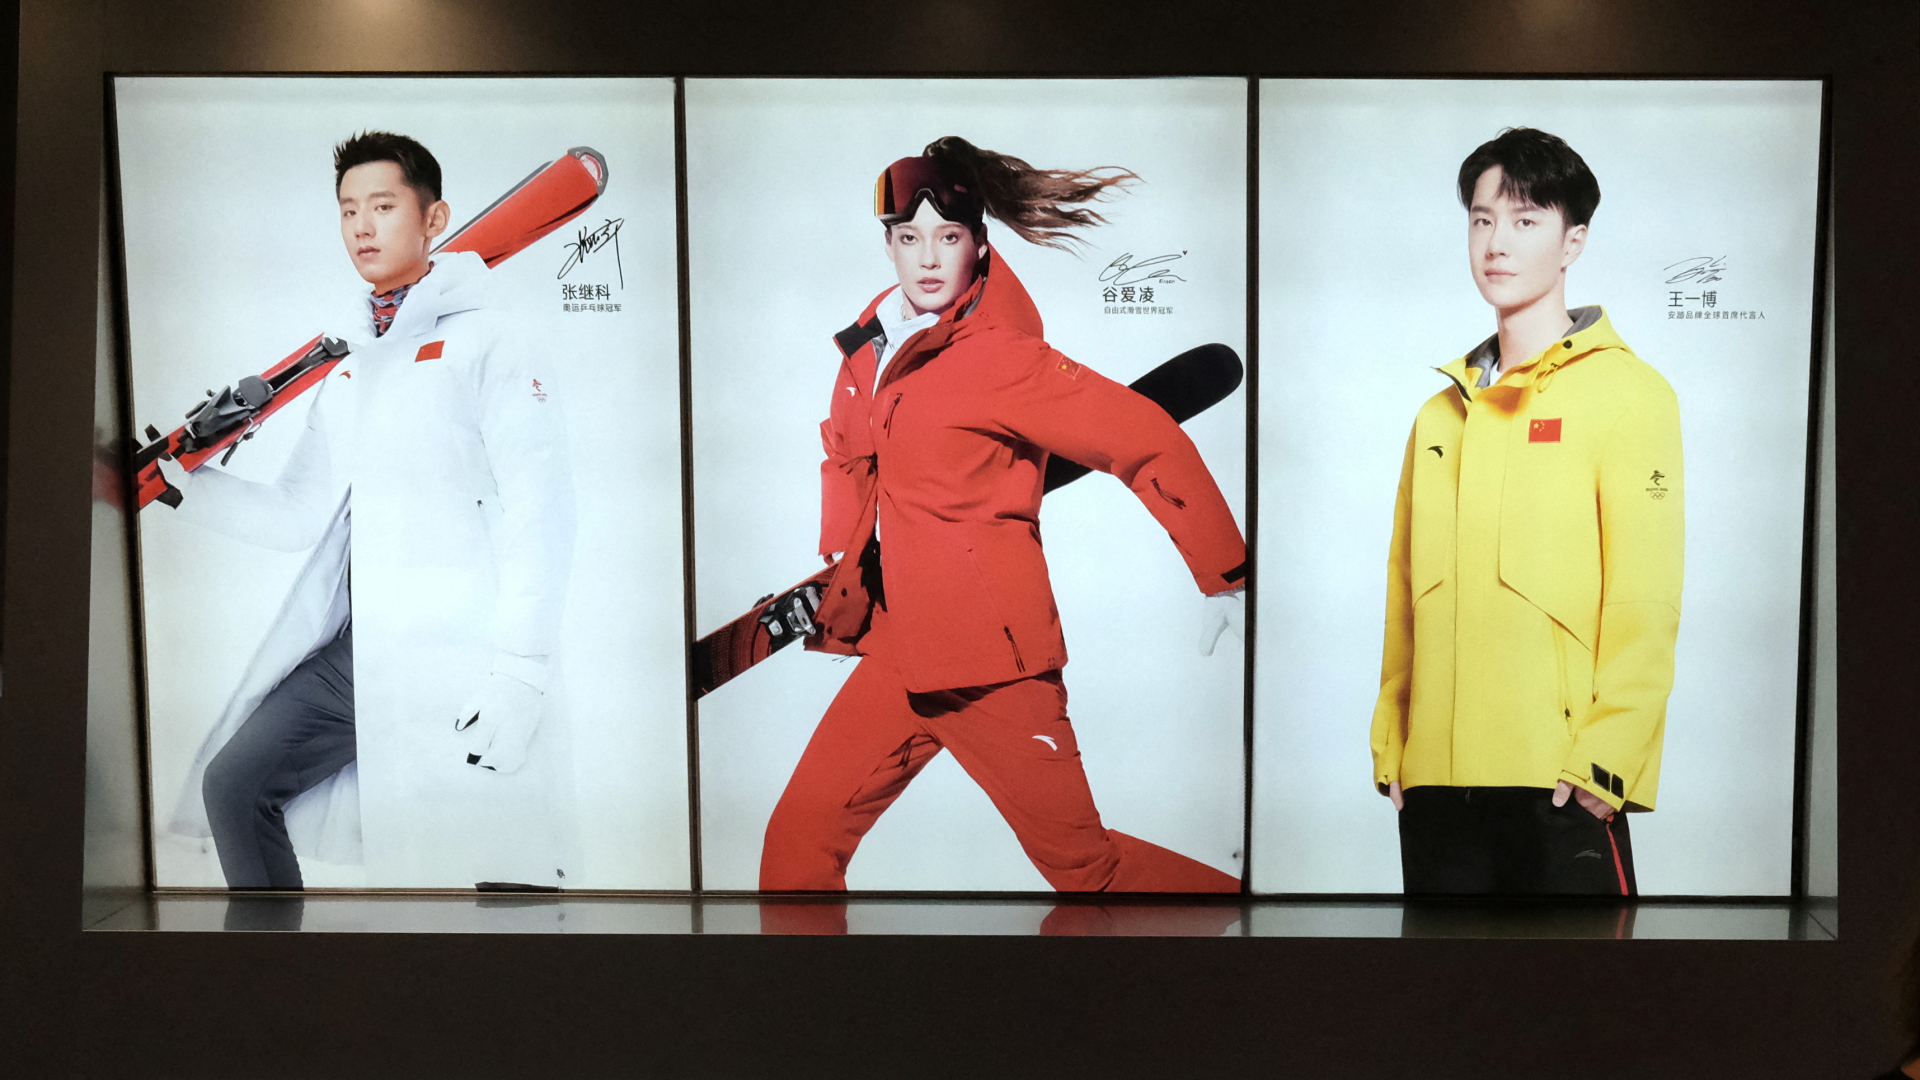 Werbung des chinesischen Wintersportartikelherstellers Anta